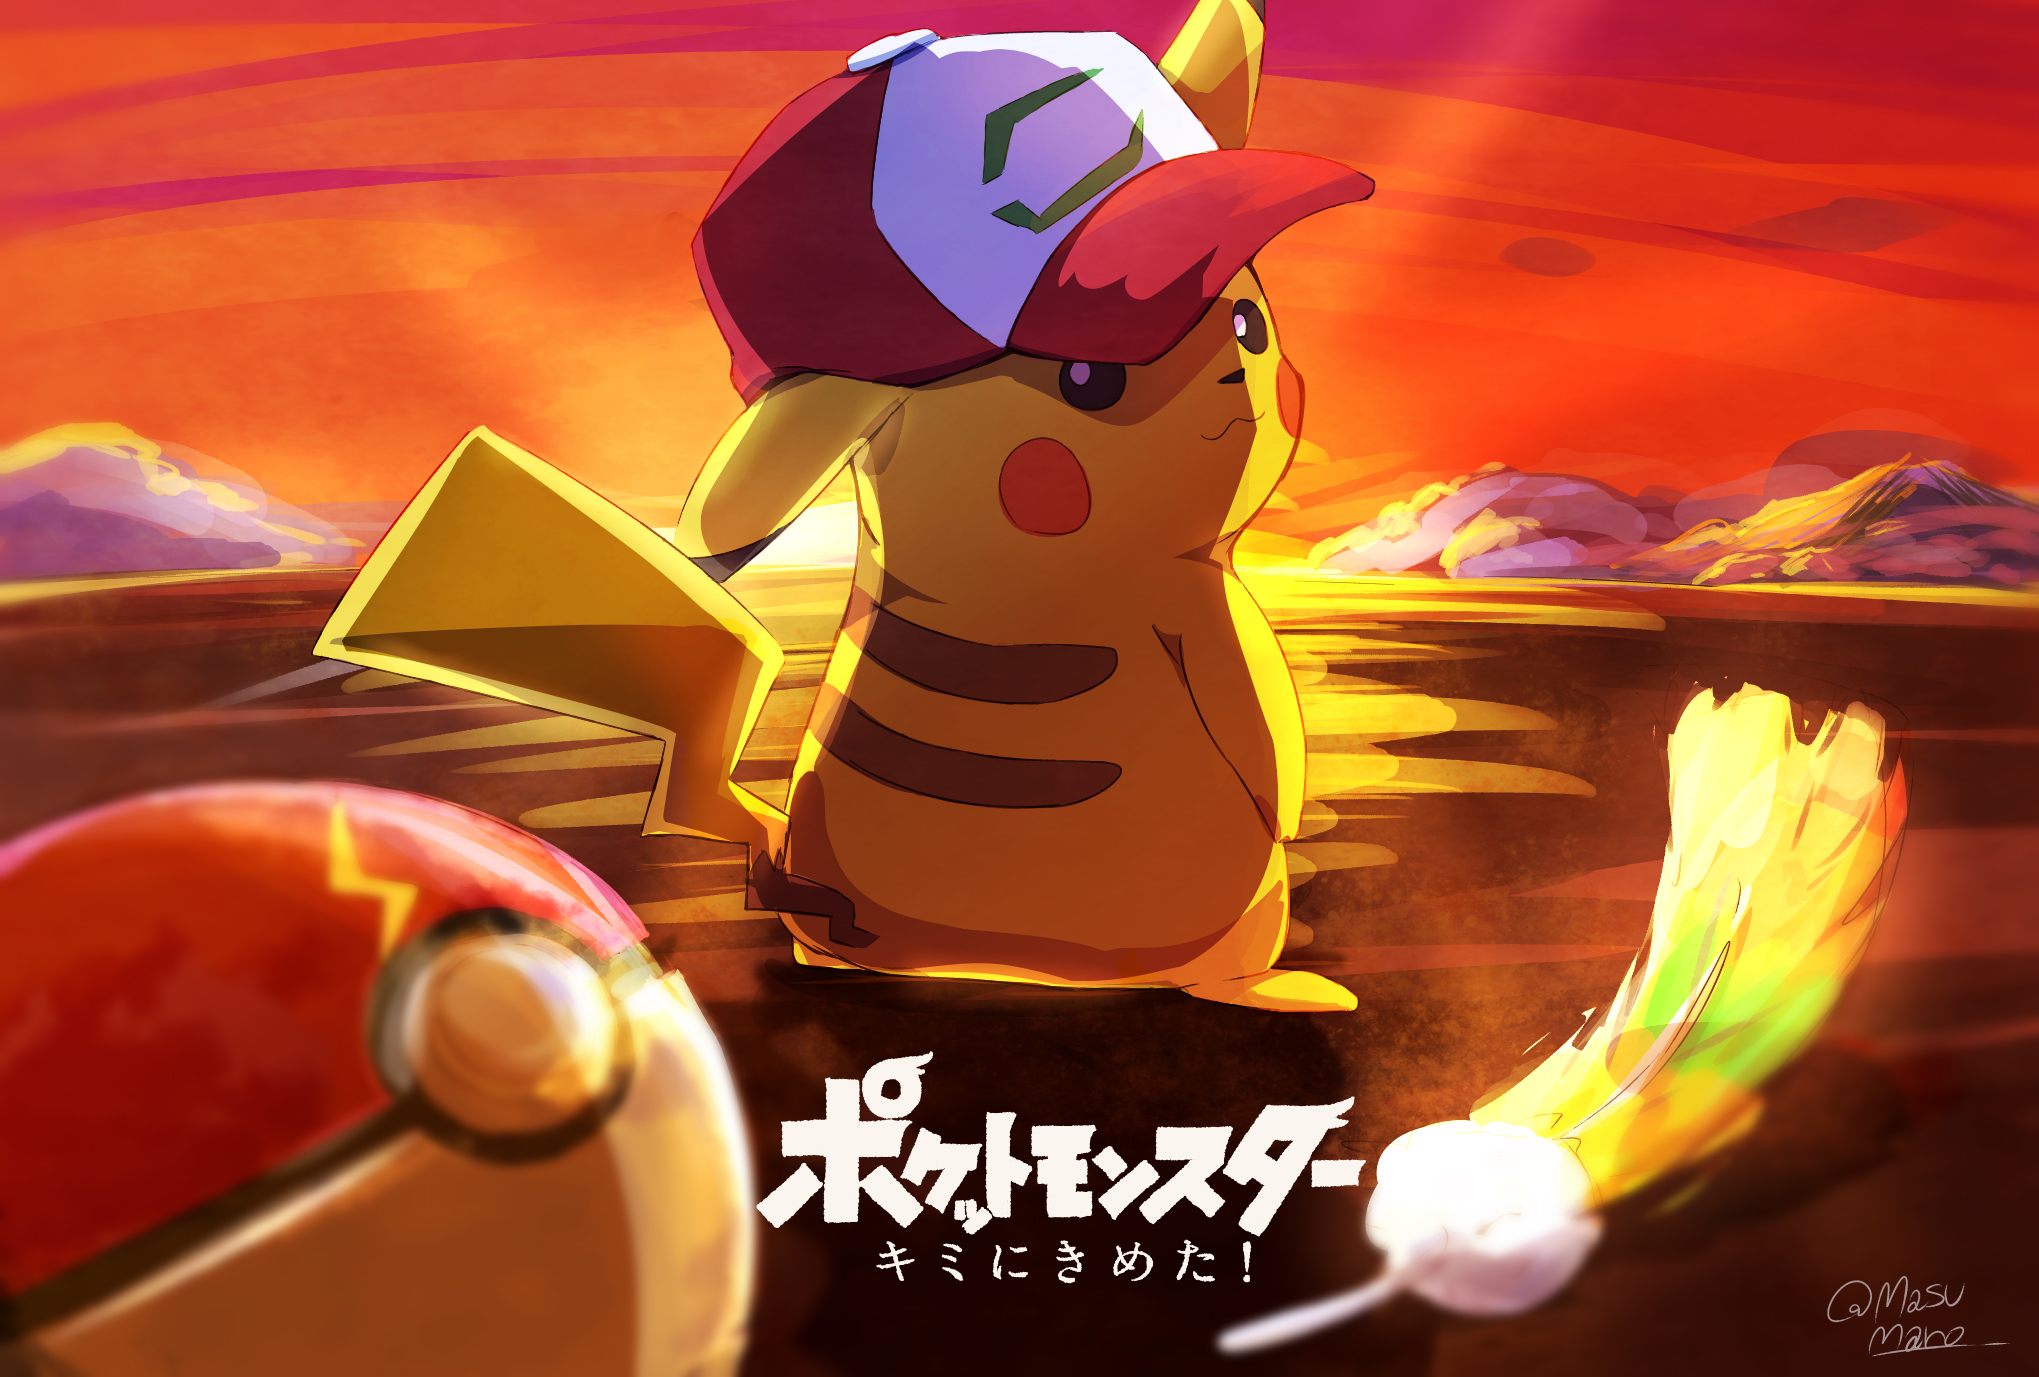 Pokémon the Movie: I Choose You! Anime Image Board